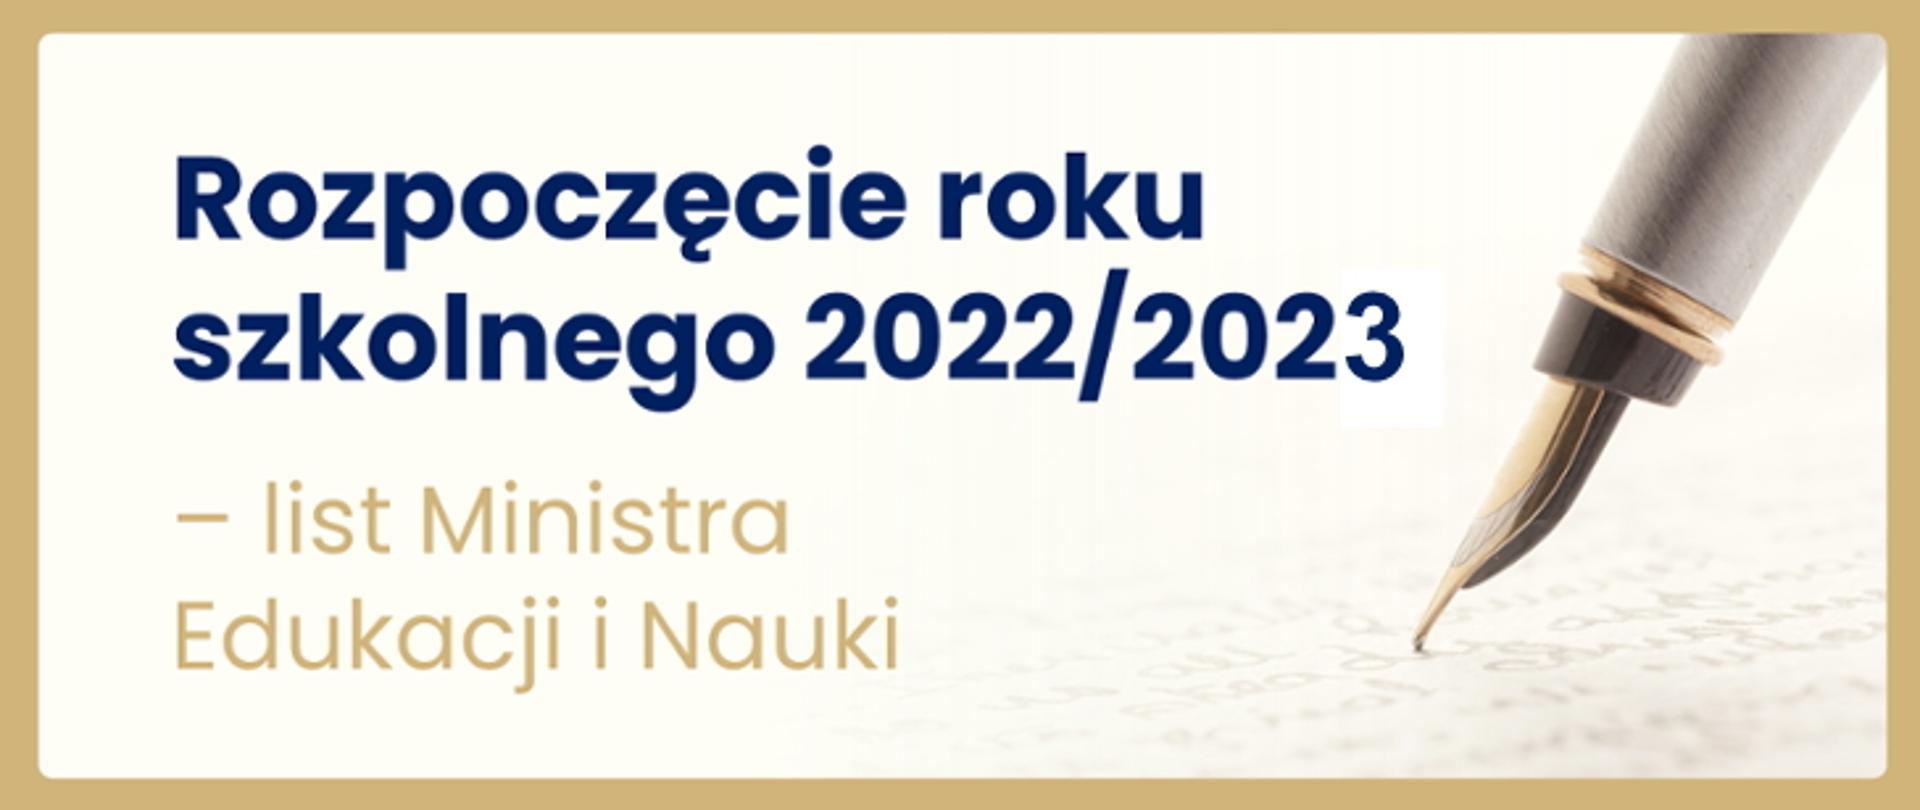 Rozpoczęcie roku szkolnego 2022/2023 - list Ministra Edukacji i Nauki